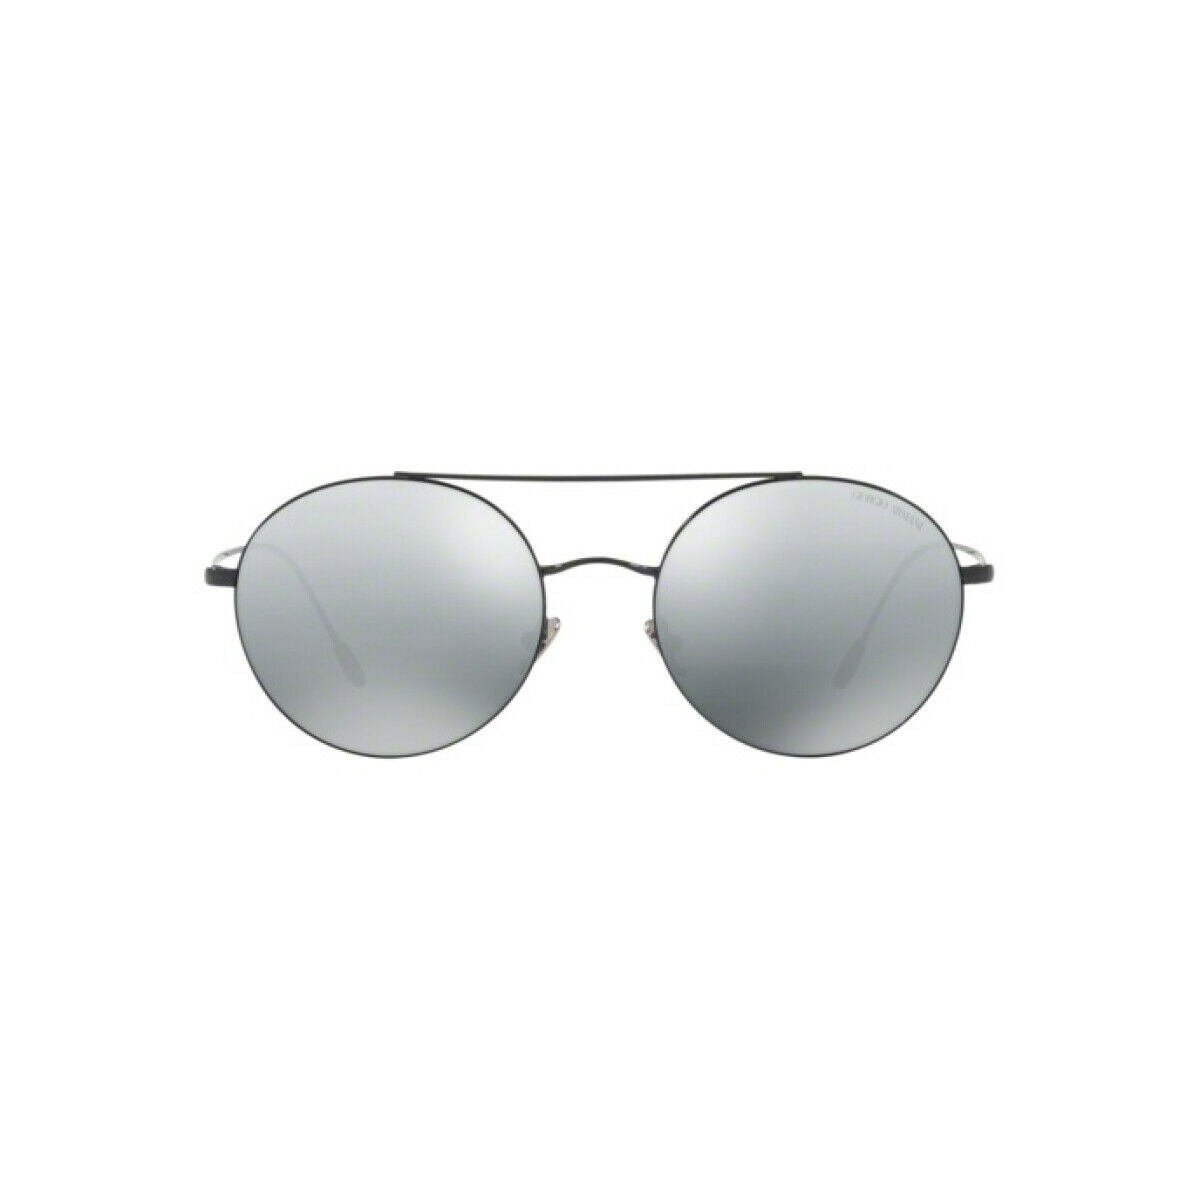 Kaufe Herrensonnenbrille Armani AR6050-301488 ø 50 mm bei AWK Flagship um € 148.00